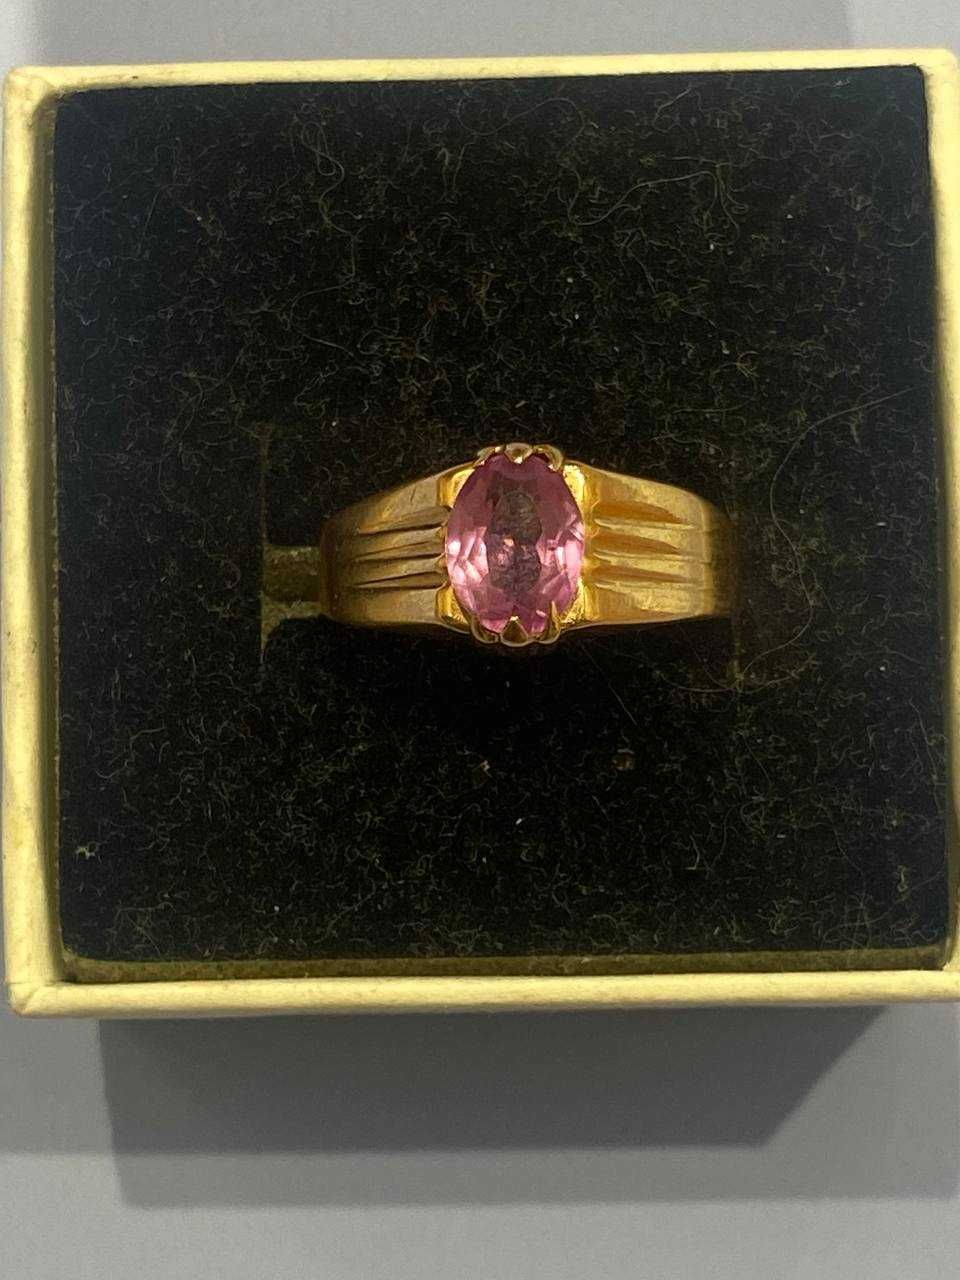 Продаю свое заводское золотое кольцо 583 проба вес 3,43 гр цена